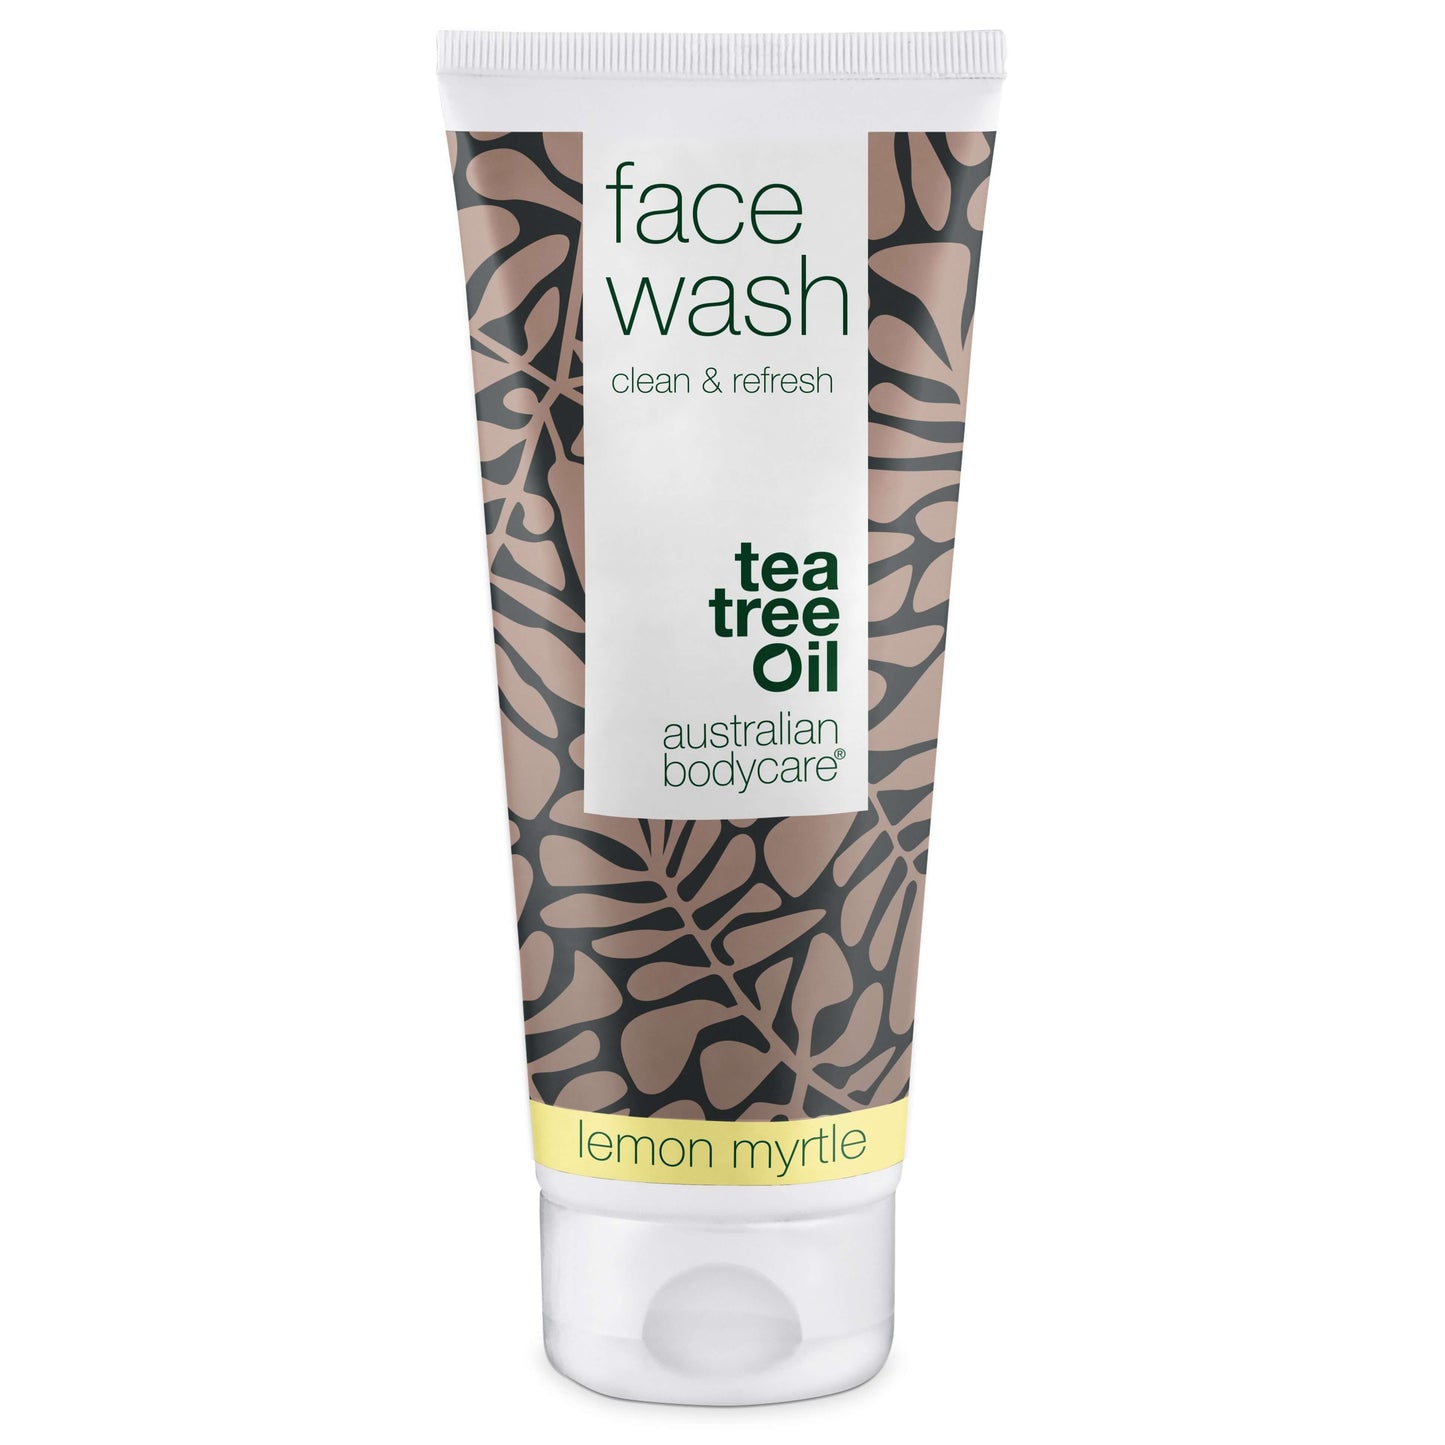 Detergente viso contro brufoli e punti neri  - Pulizia del viso quotidiana, ideale per pelle impura e con acne